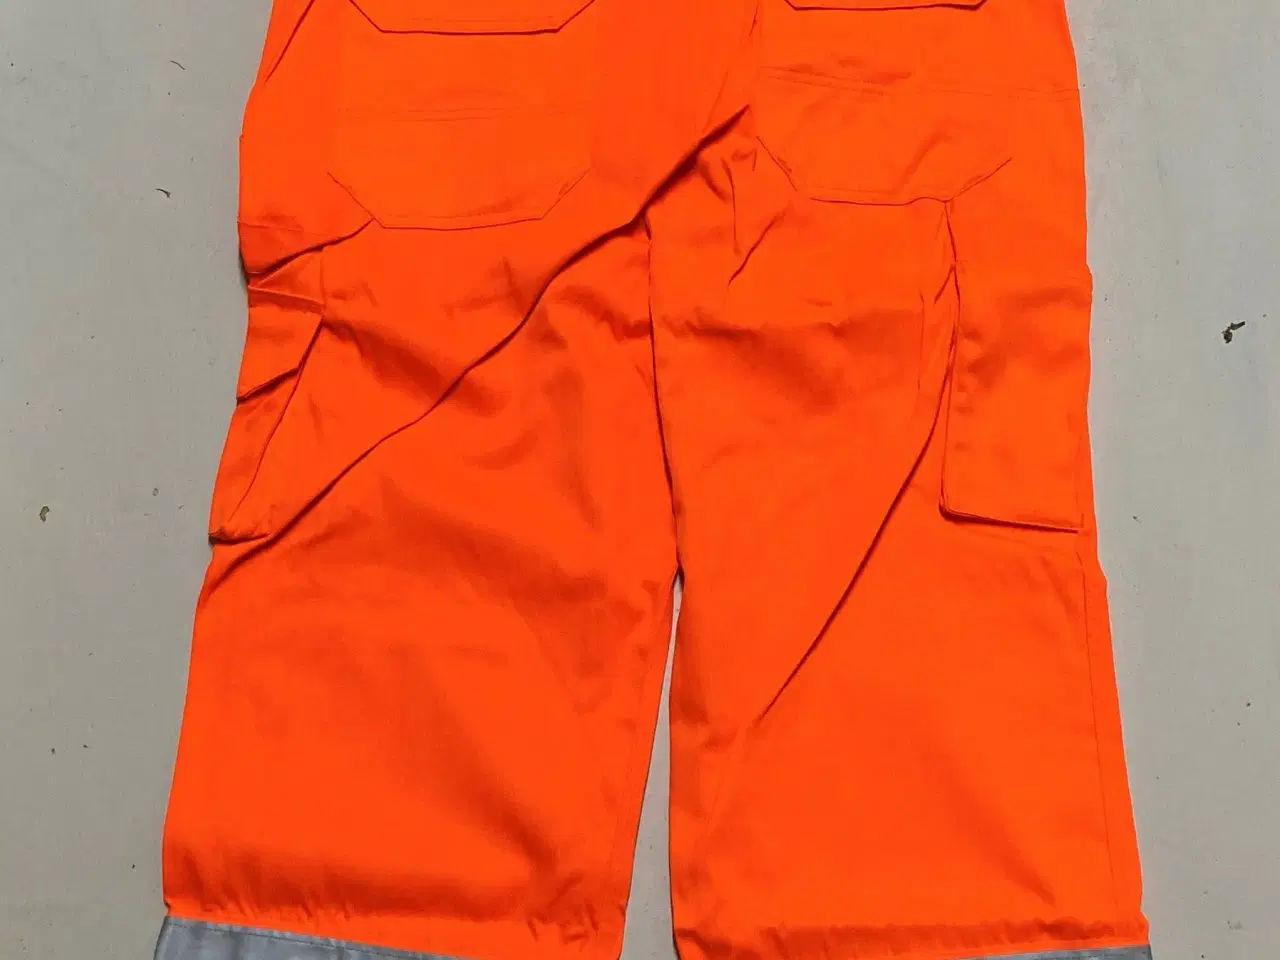 Billede 4 - Arbejdstøj Orange Overalls med refleks